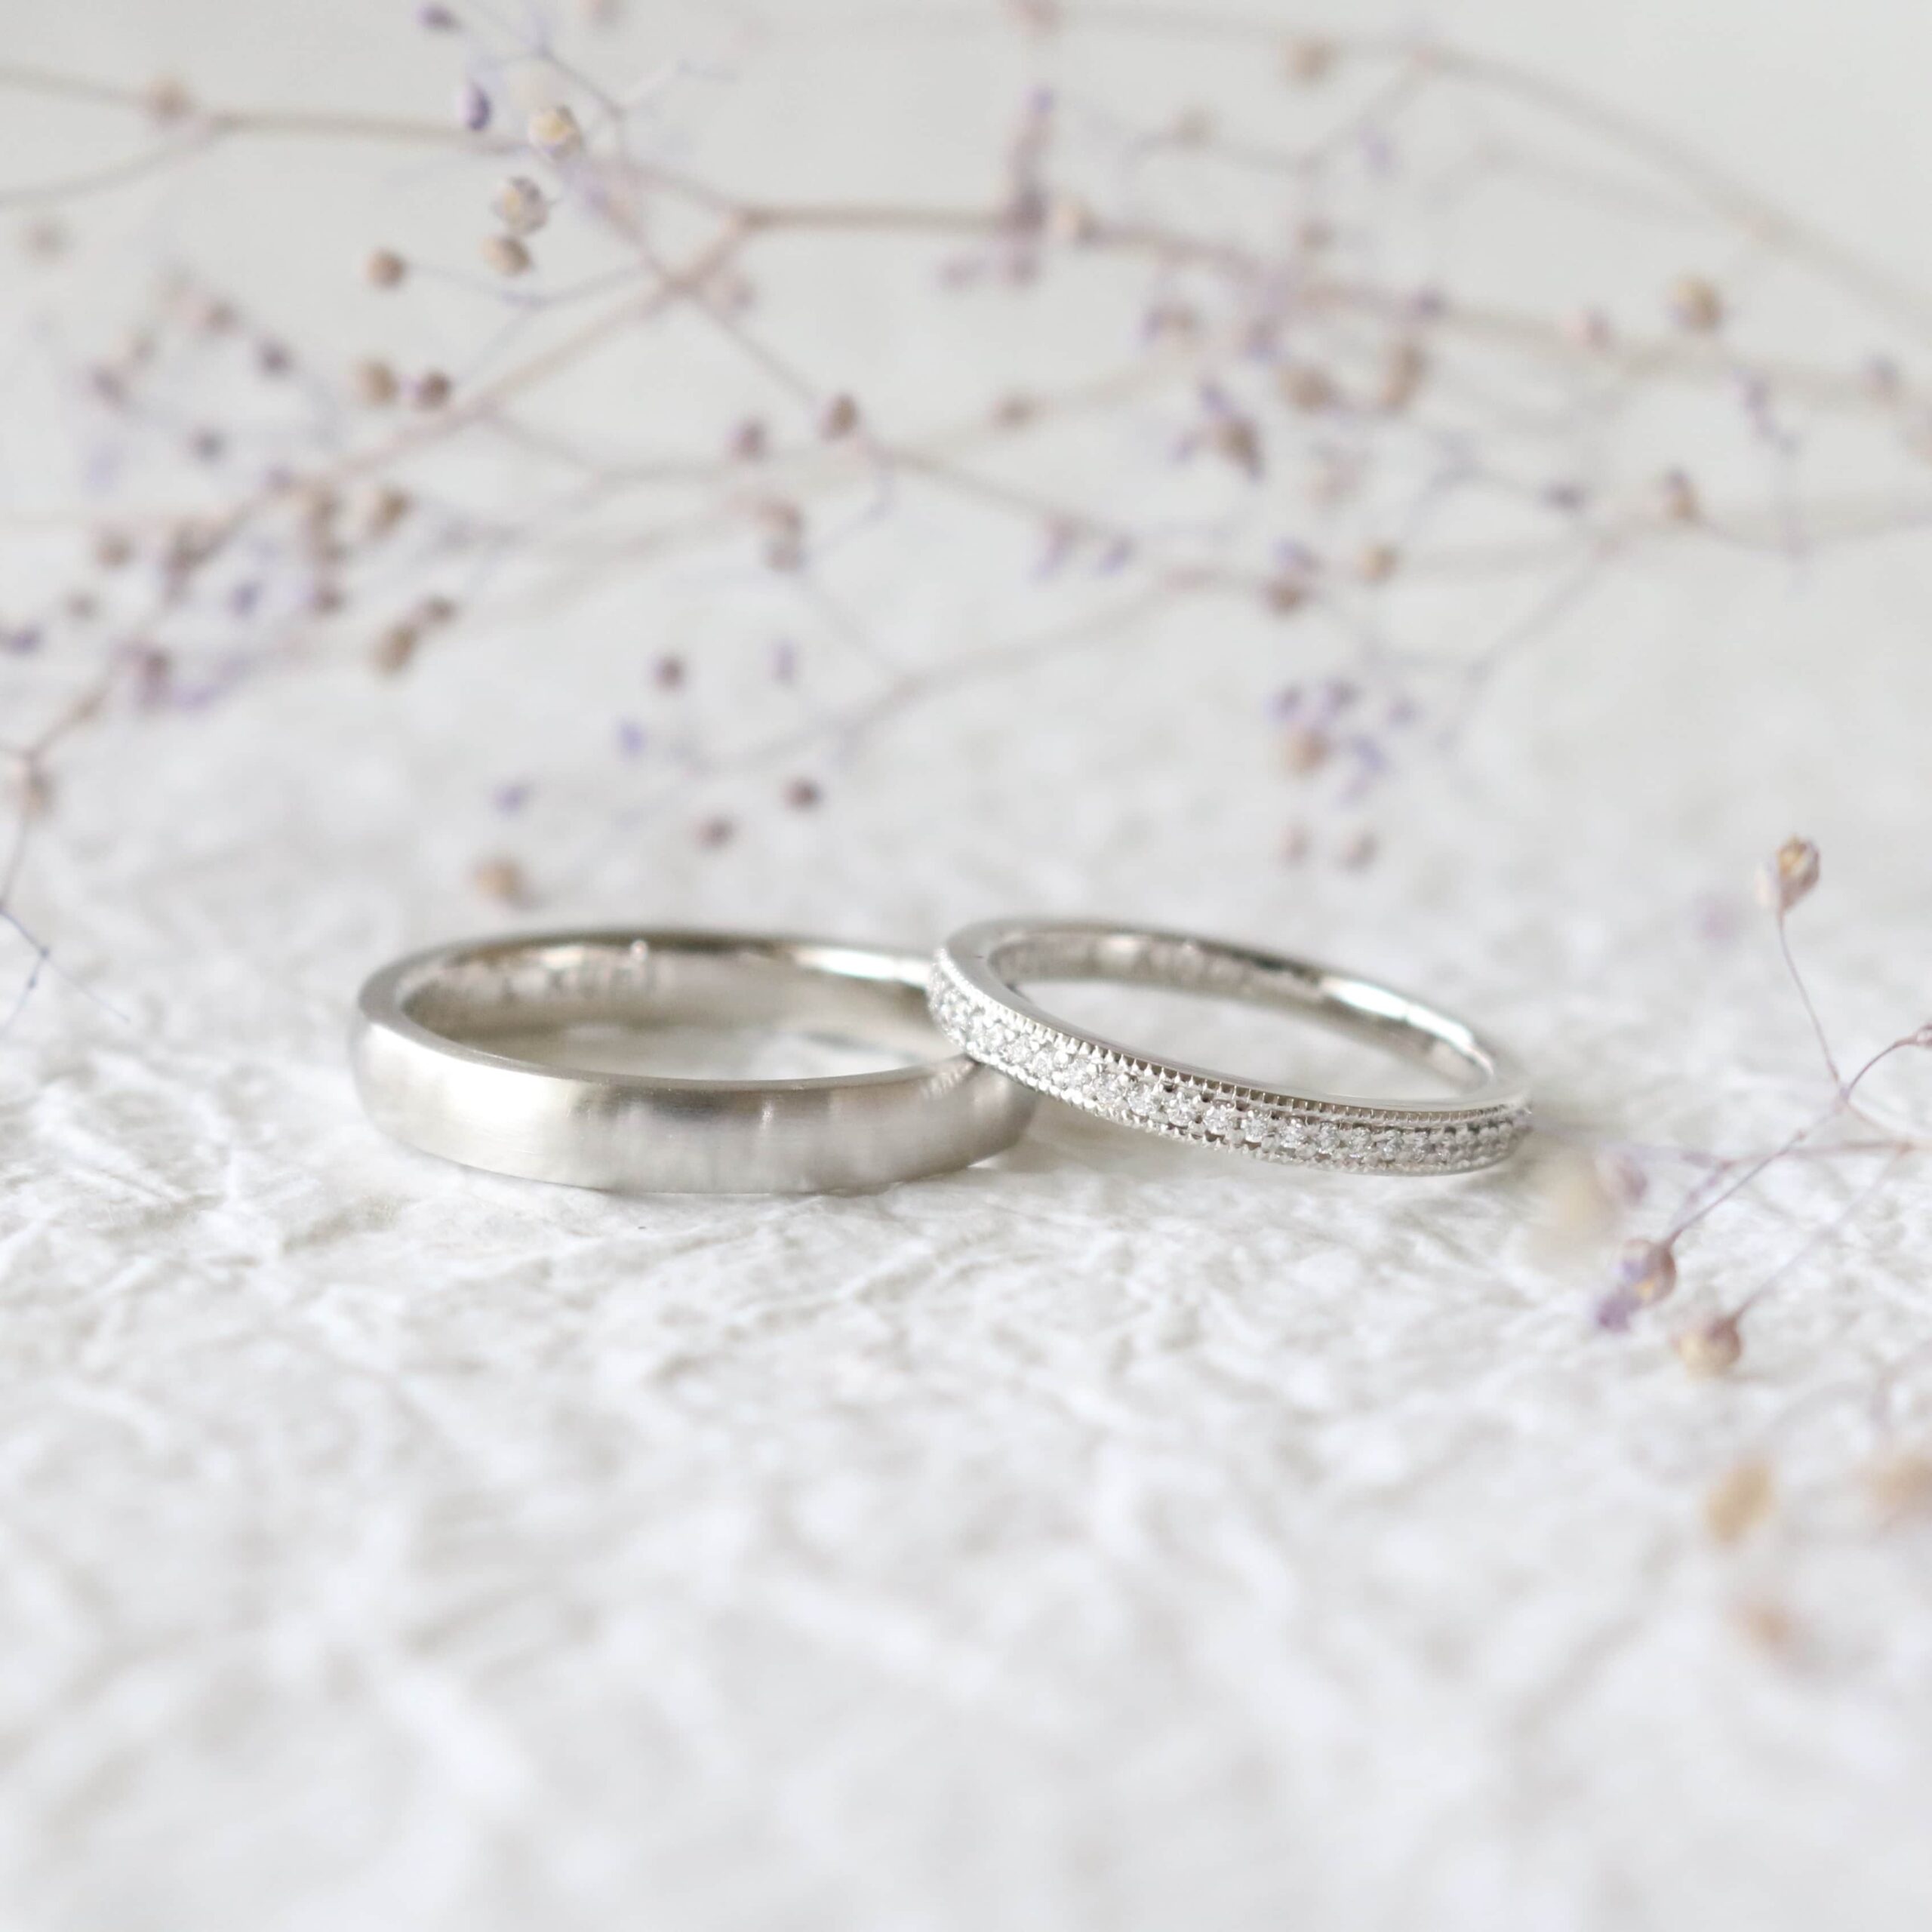 結婚指輪と婚約指輪の兼用に最適なおすすめのデザインについて